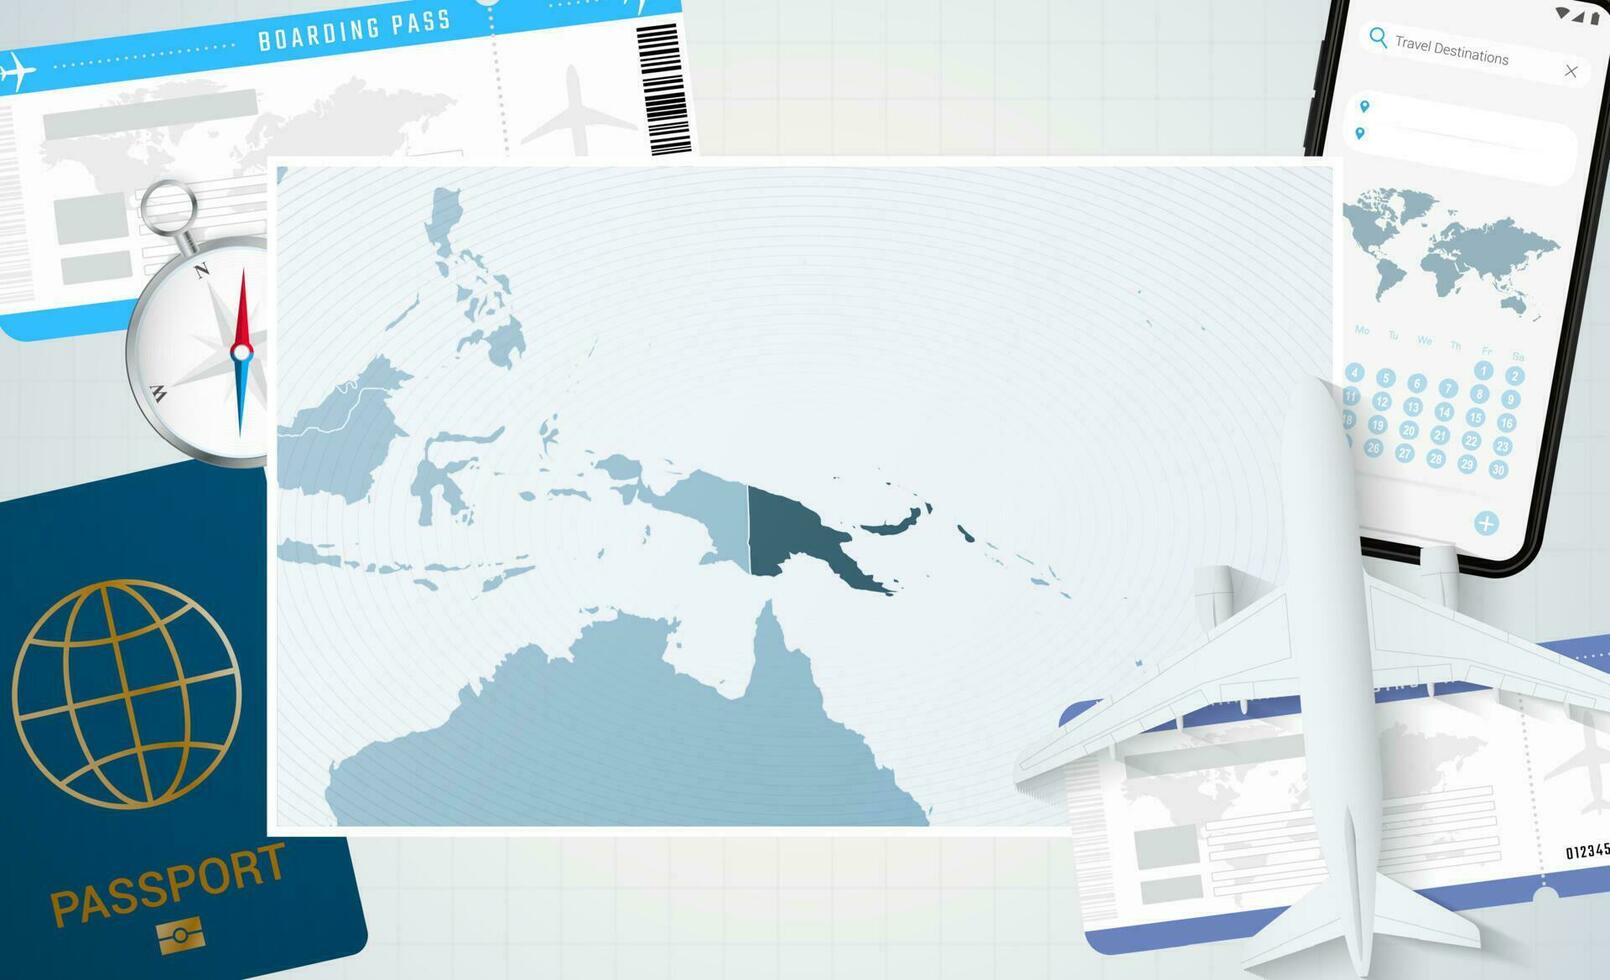 reis naar Papoea nieuw Guinea, illustratie met een kaart van Papoea nieuw Guinea. achtergrond met vliegtuig, cel telefoon, paspoort, kompas en kaartjes. vector